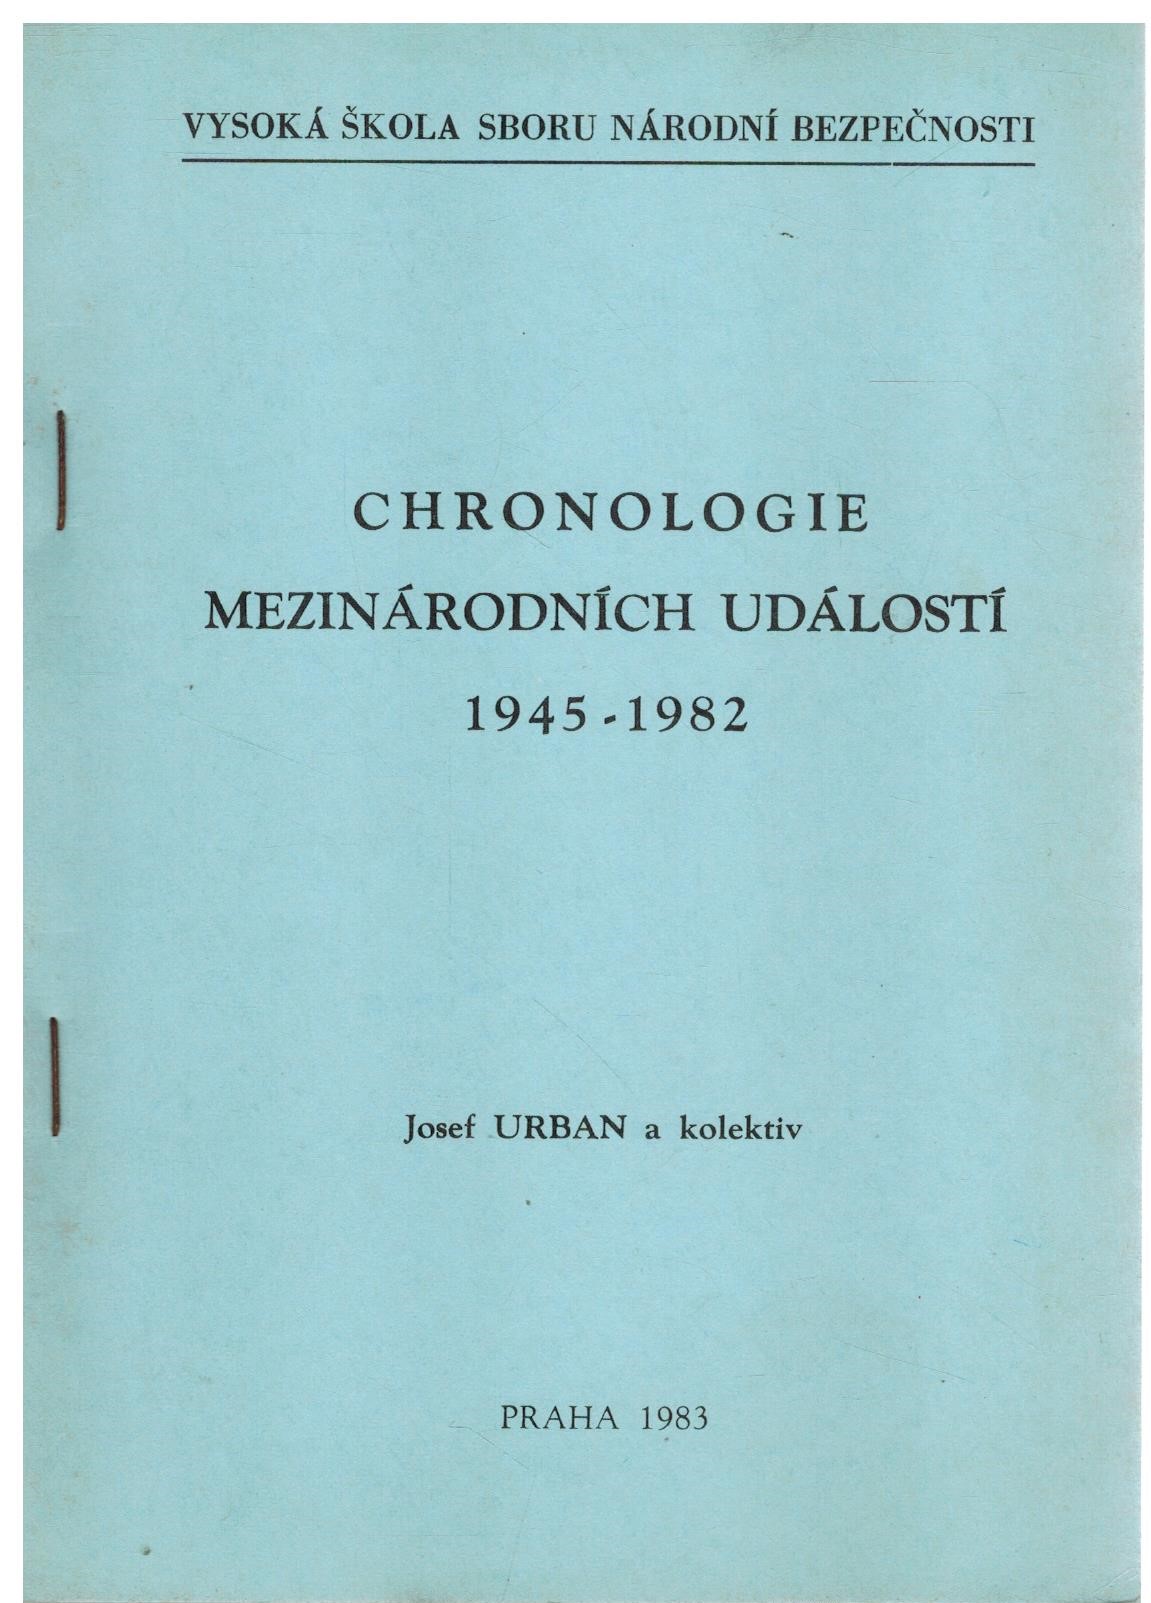 CHRONOLOGIE MEZINÁRODNÍCH ÚDÁLOSTÍ 1945-1982